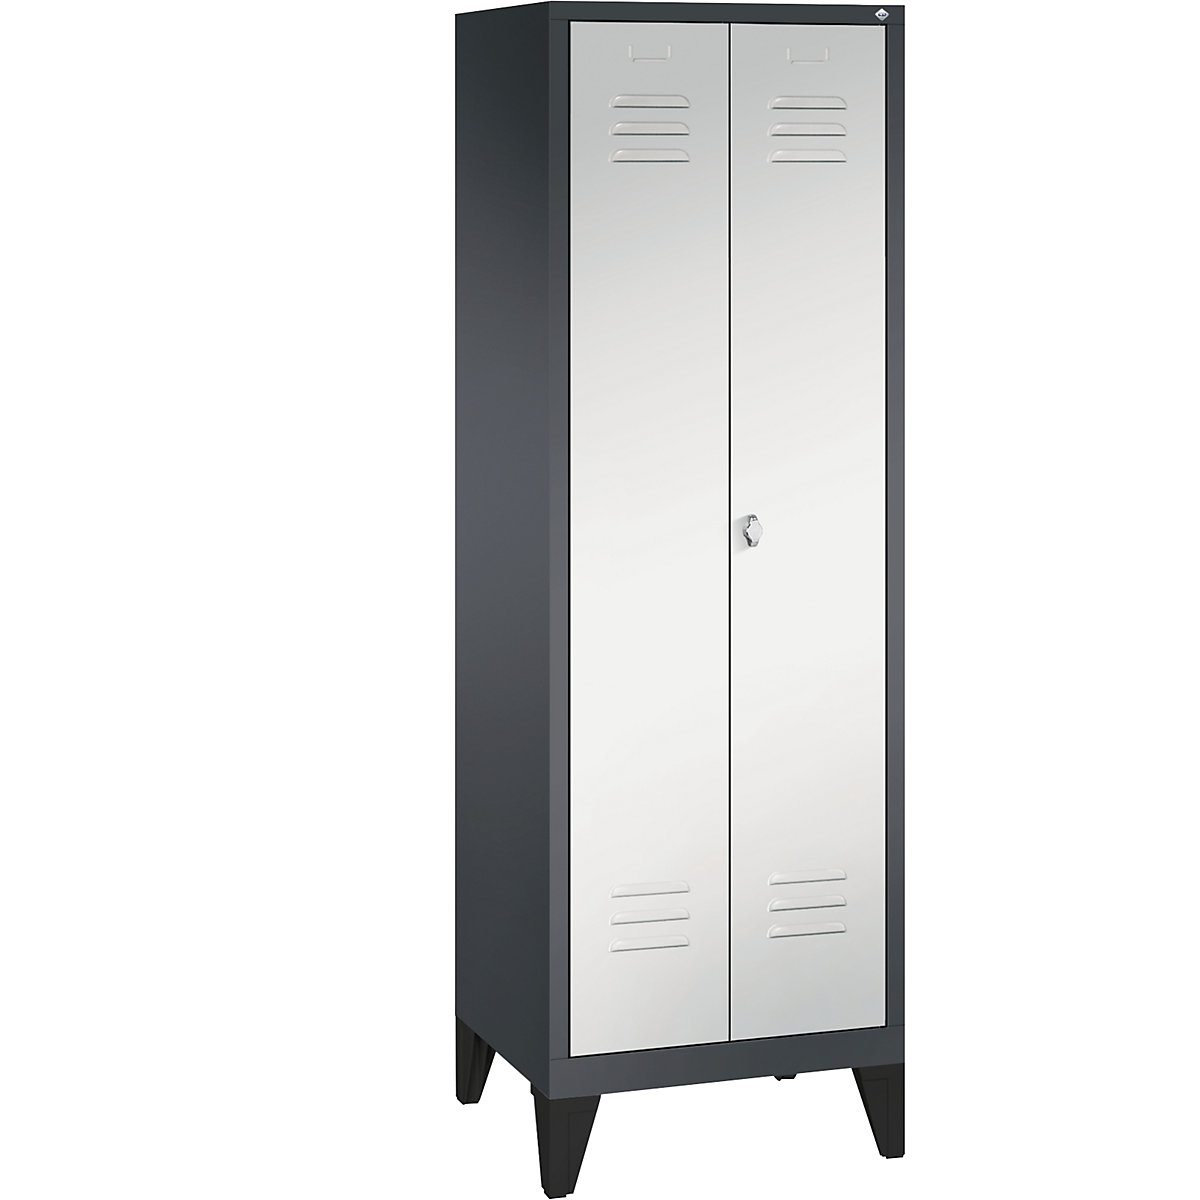 Garderobna omara CLASSIC z nogami in dvokrilnimi vrati na stik – C+P, 2 predelka, širina 300 mm/predelek, črno sive / svetlo sive barve-9